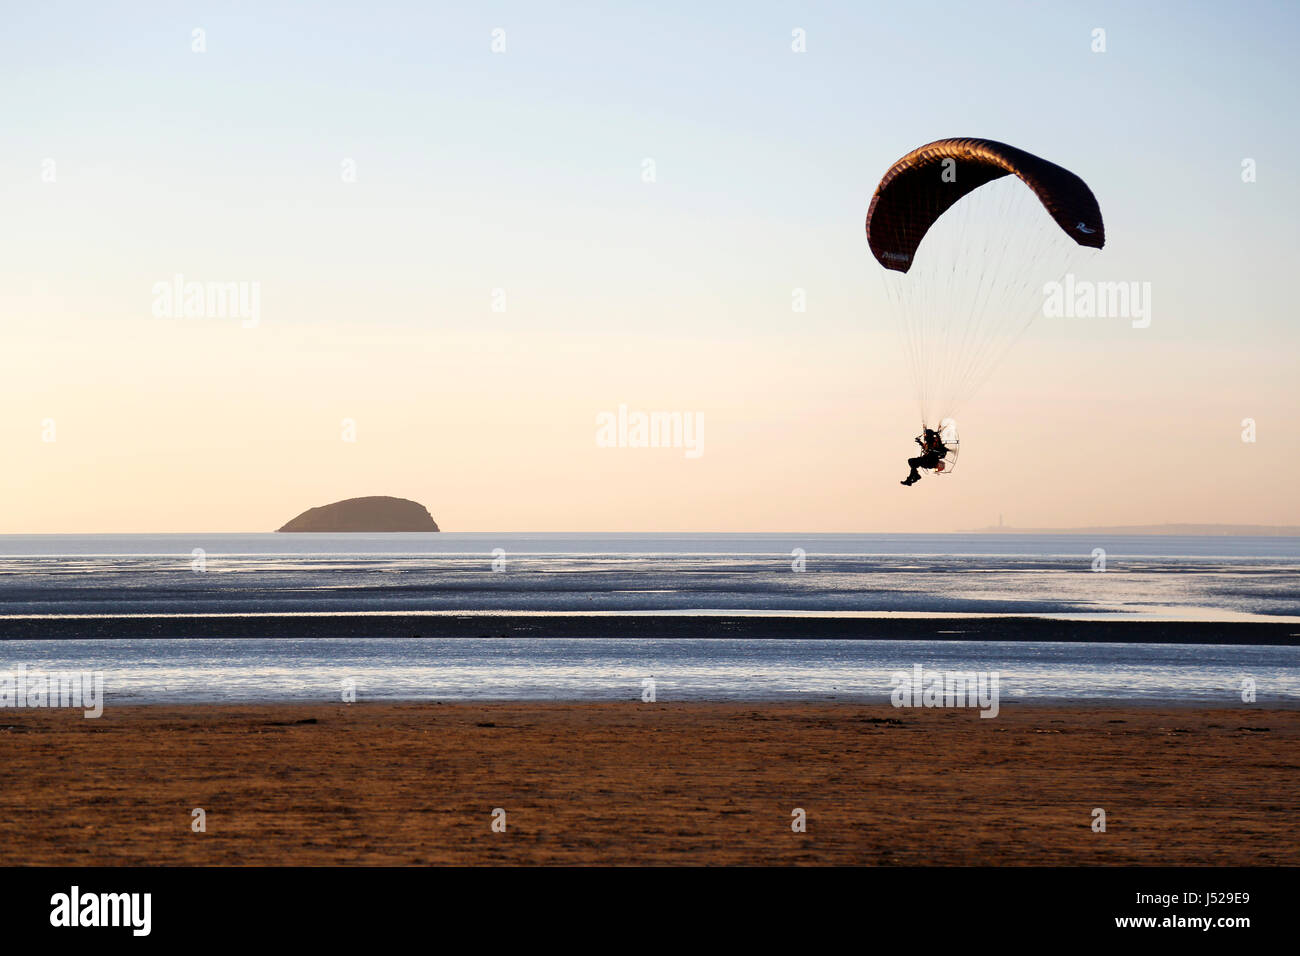 Une volée de parapente sur et le long de la ligne de rivage d'une plage déserte au coucher du soleil Banque D'Images